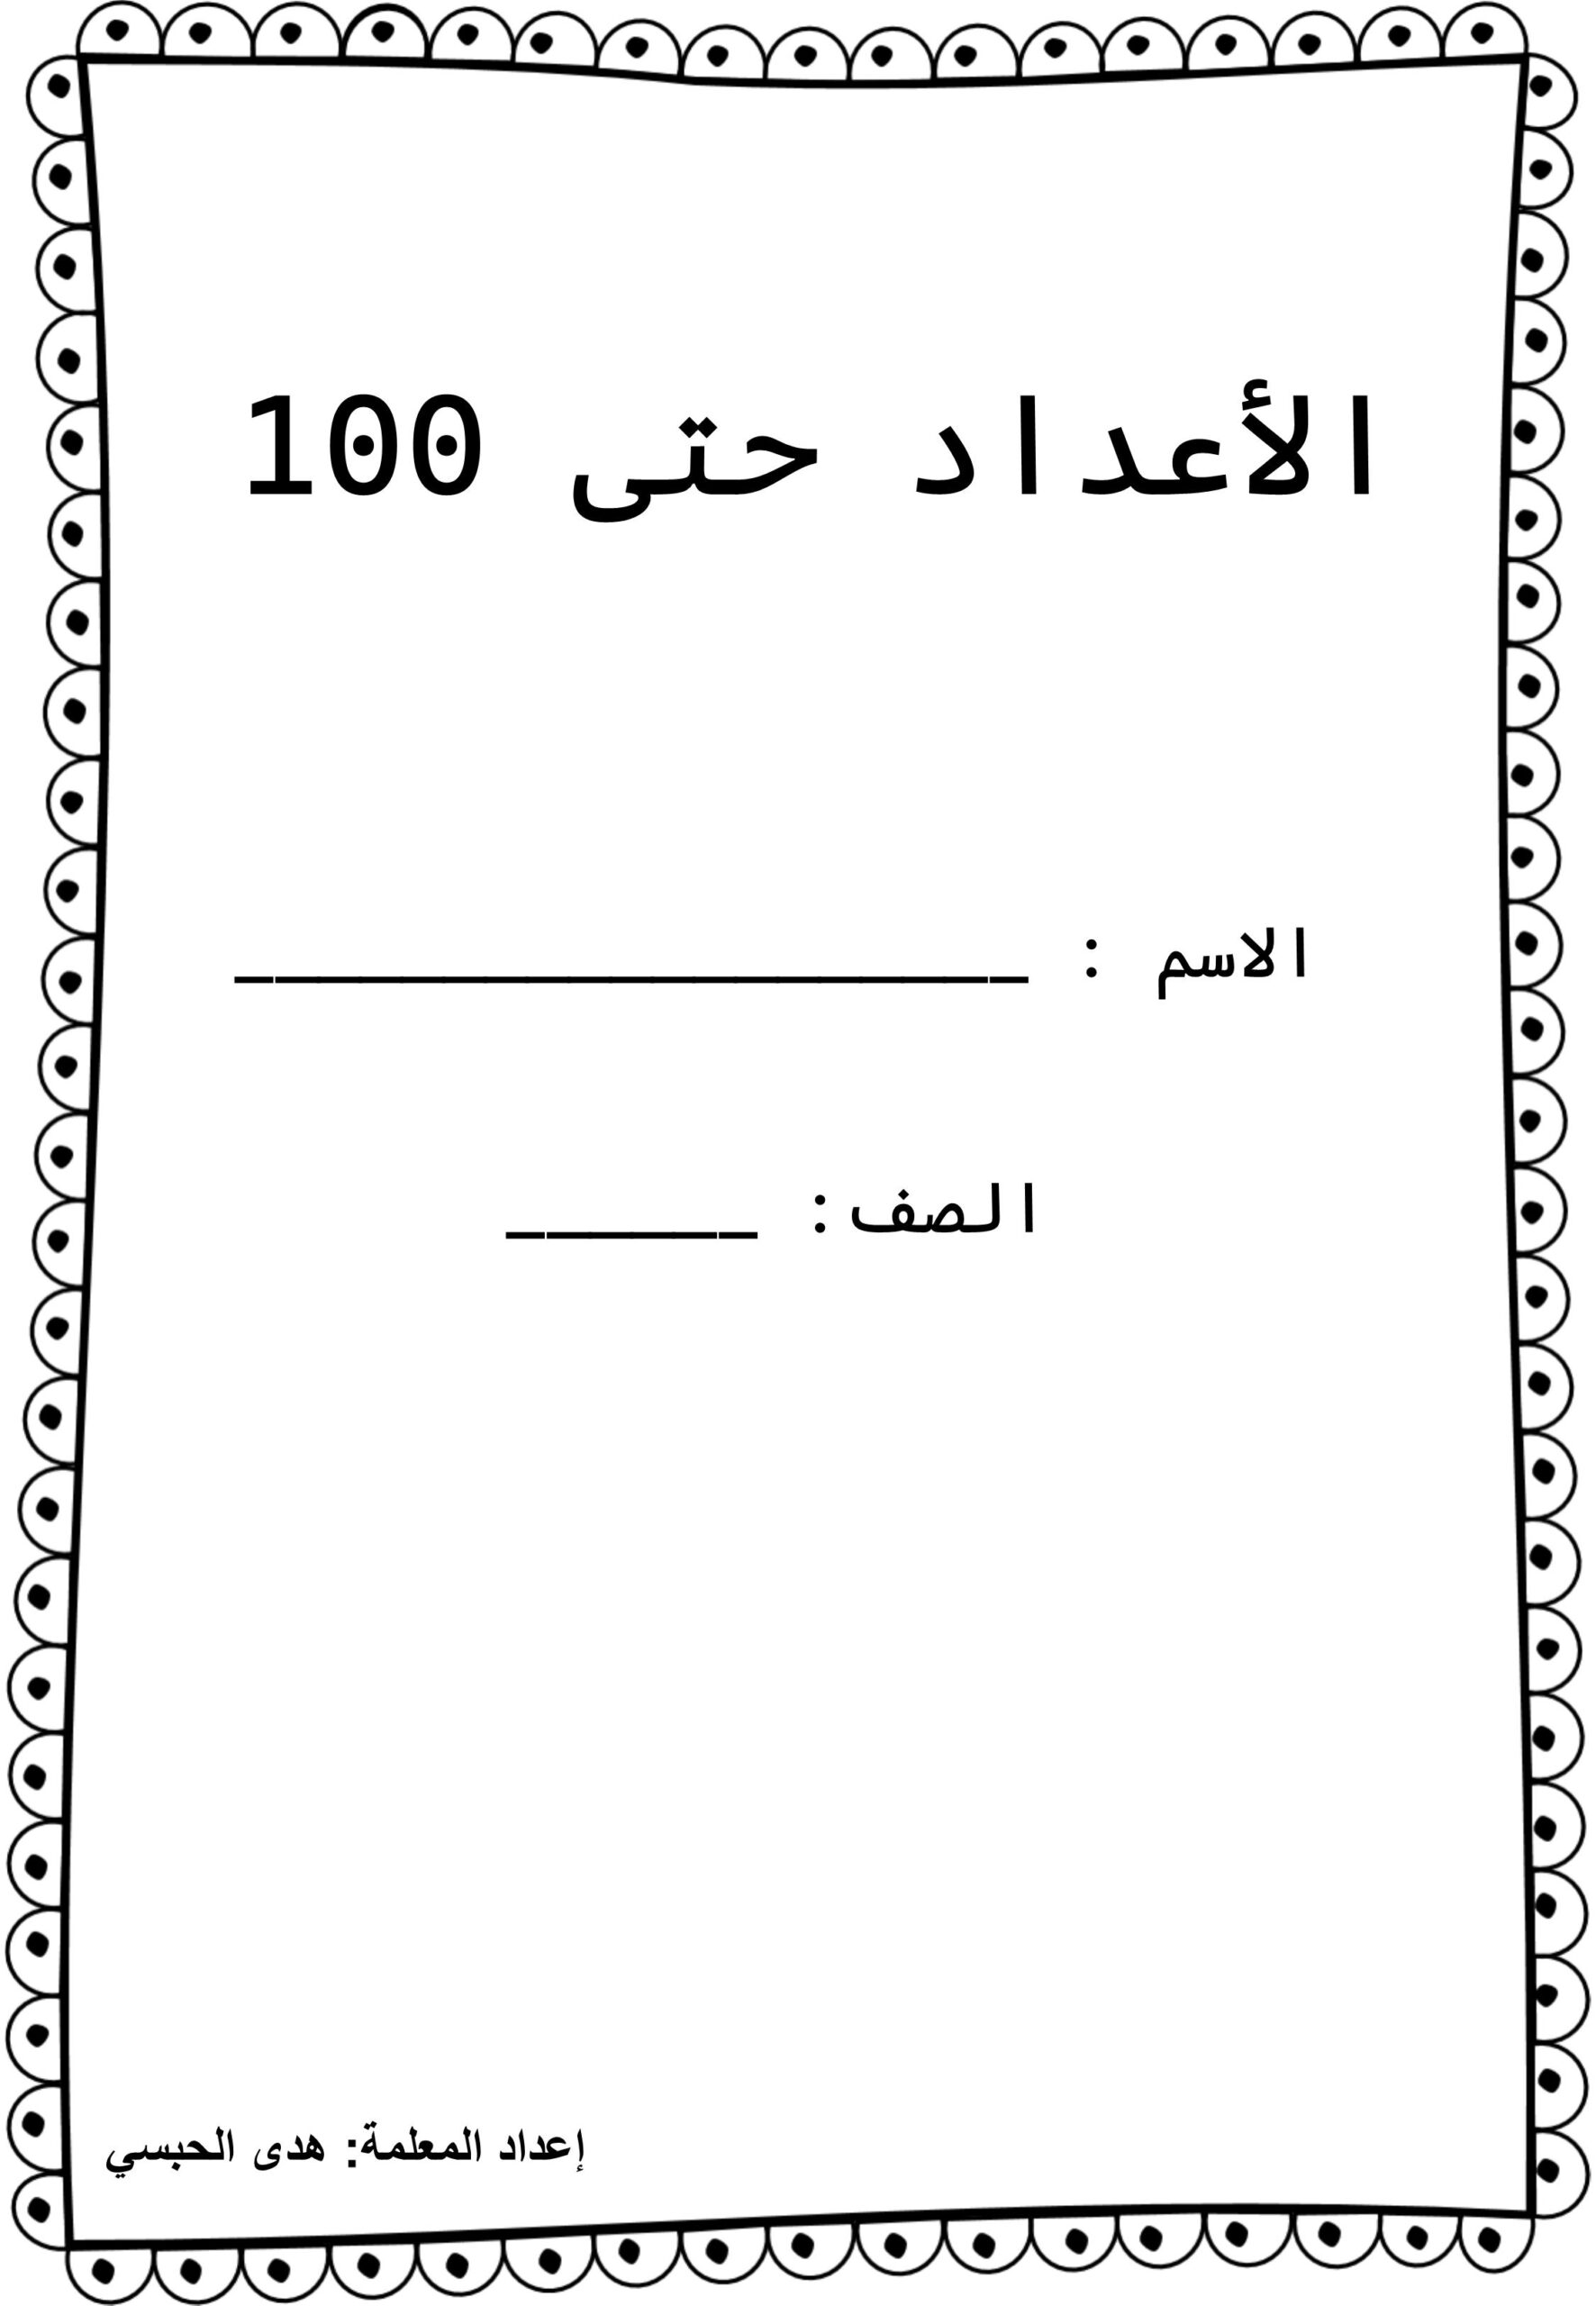 أوراق عمل الأعداد حتى 120 الرياضيات المتكاملة الصف الأول